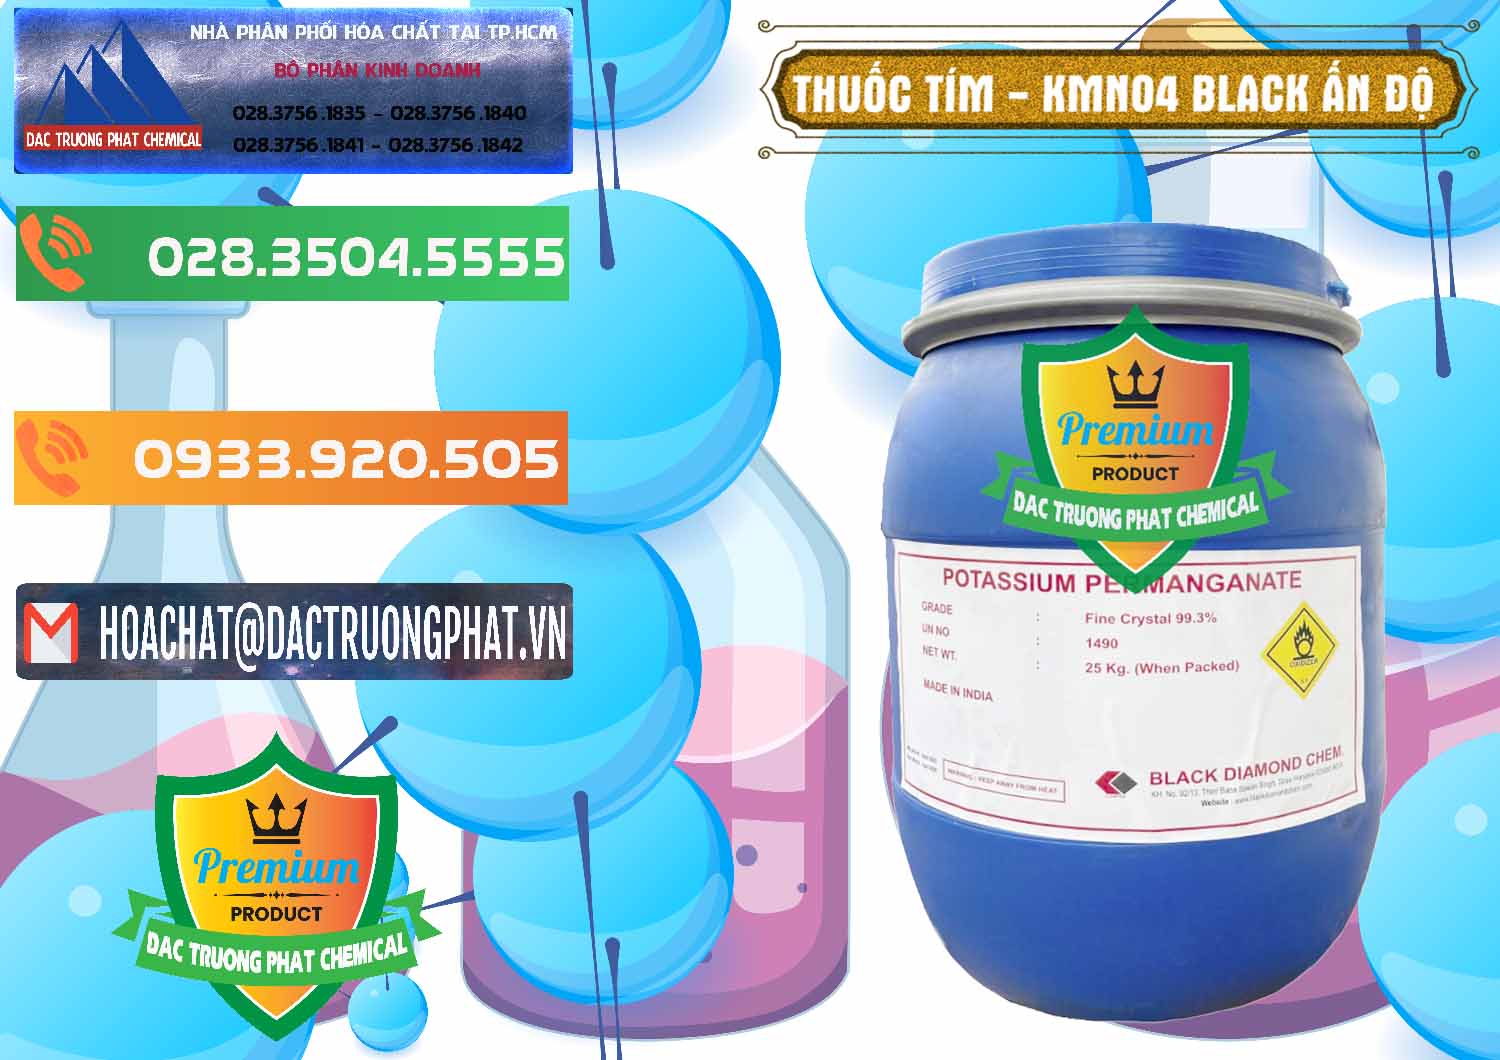 Công ty chuyên phân phối & bán Thuốc Tím - KMNO4 Black Diamond Ấn Độ India - 0414 - Chuyên bán & cung cấp hóa chất tại TP.HCM - hoachatxulynuoc.com.vn